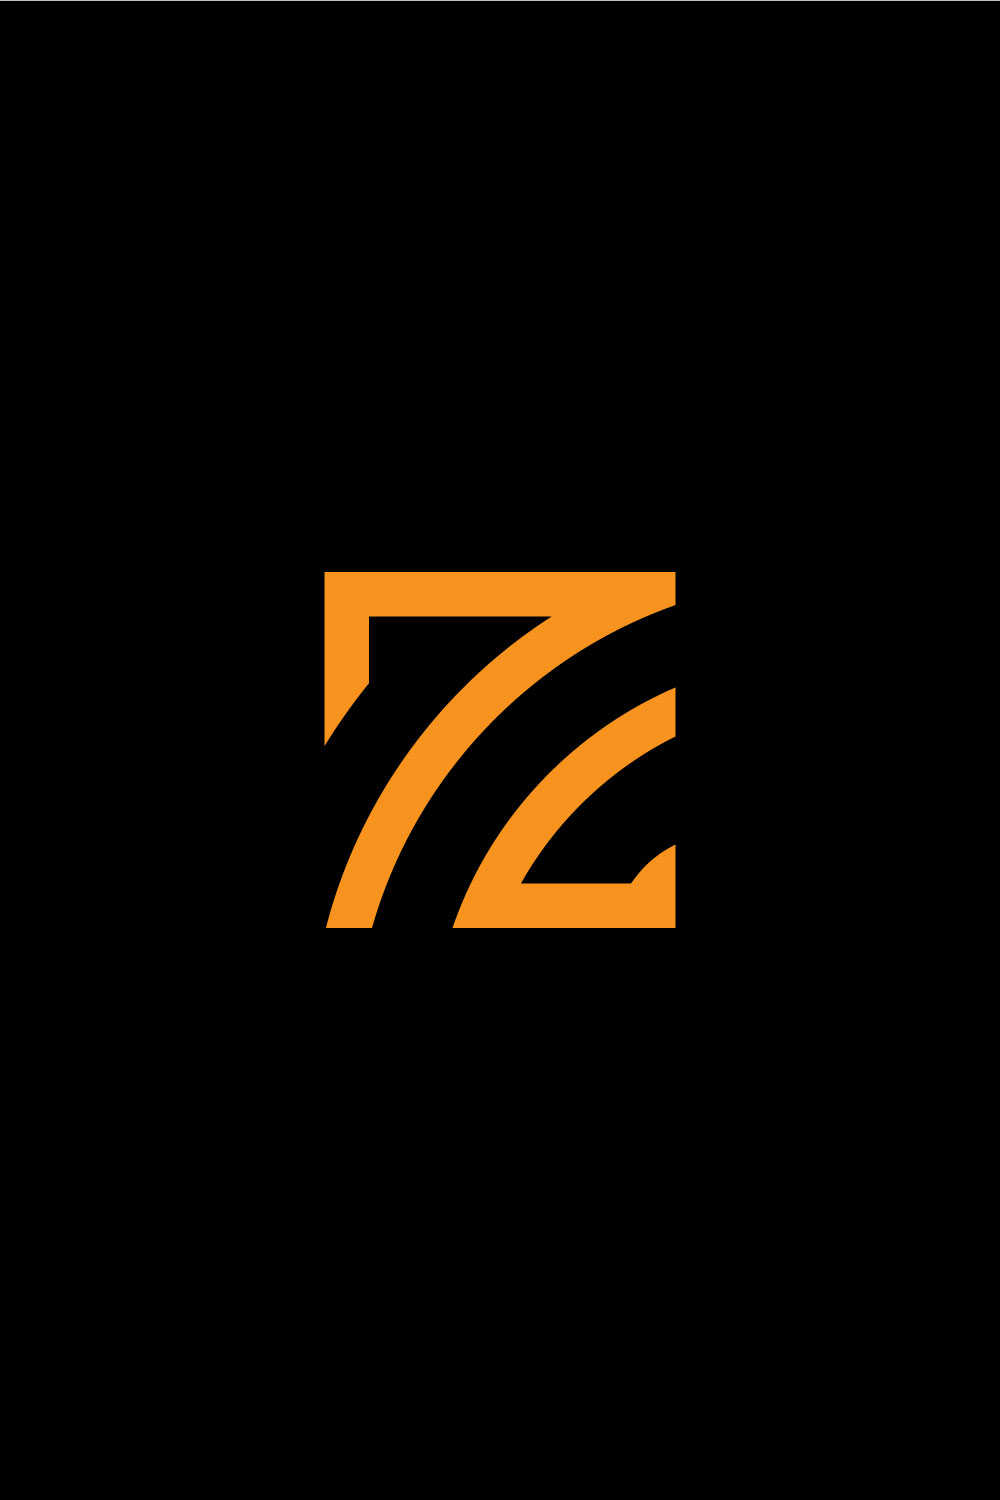 Z Letter Logo Design Pinterest image.